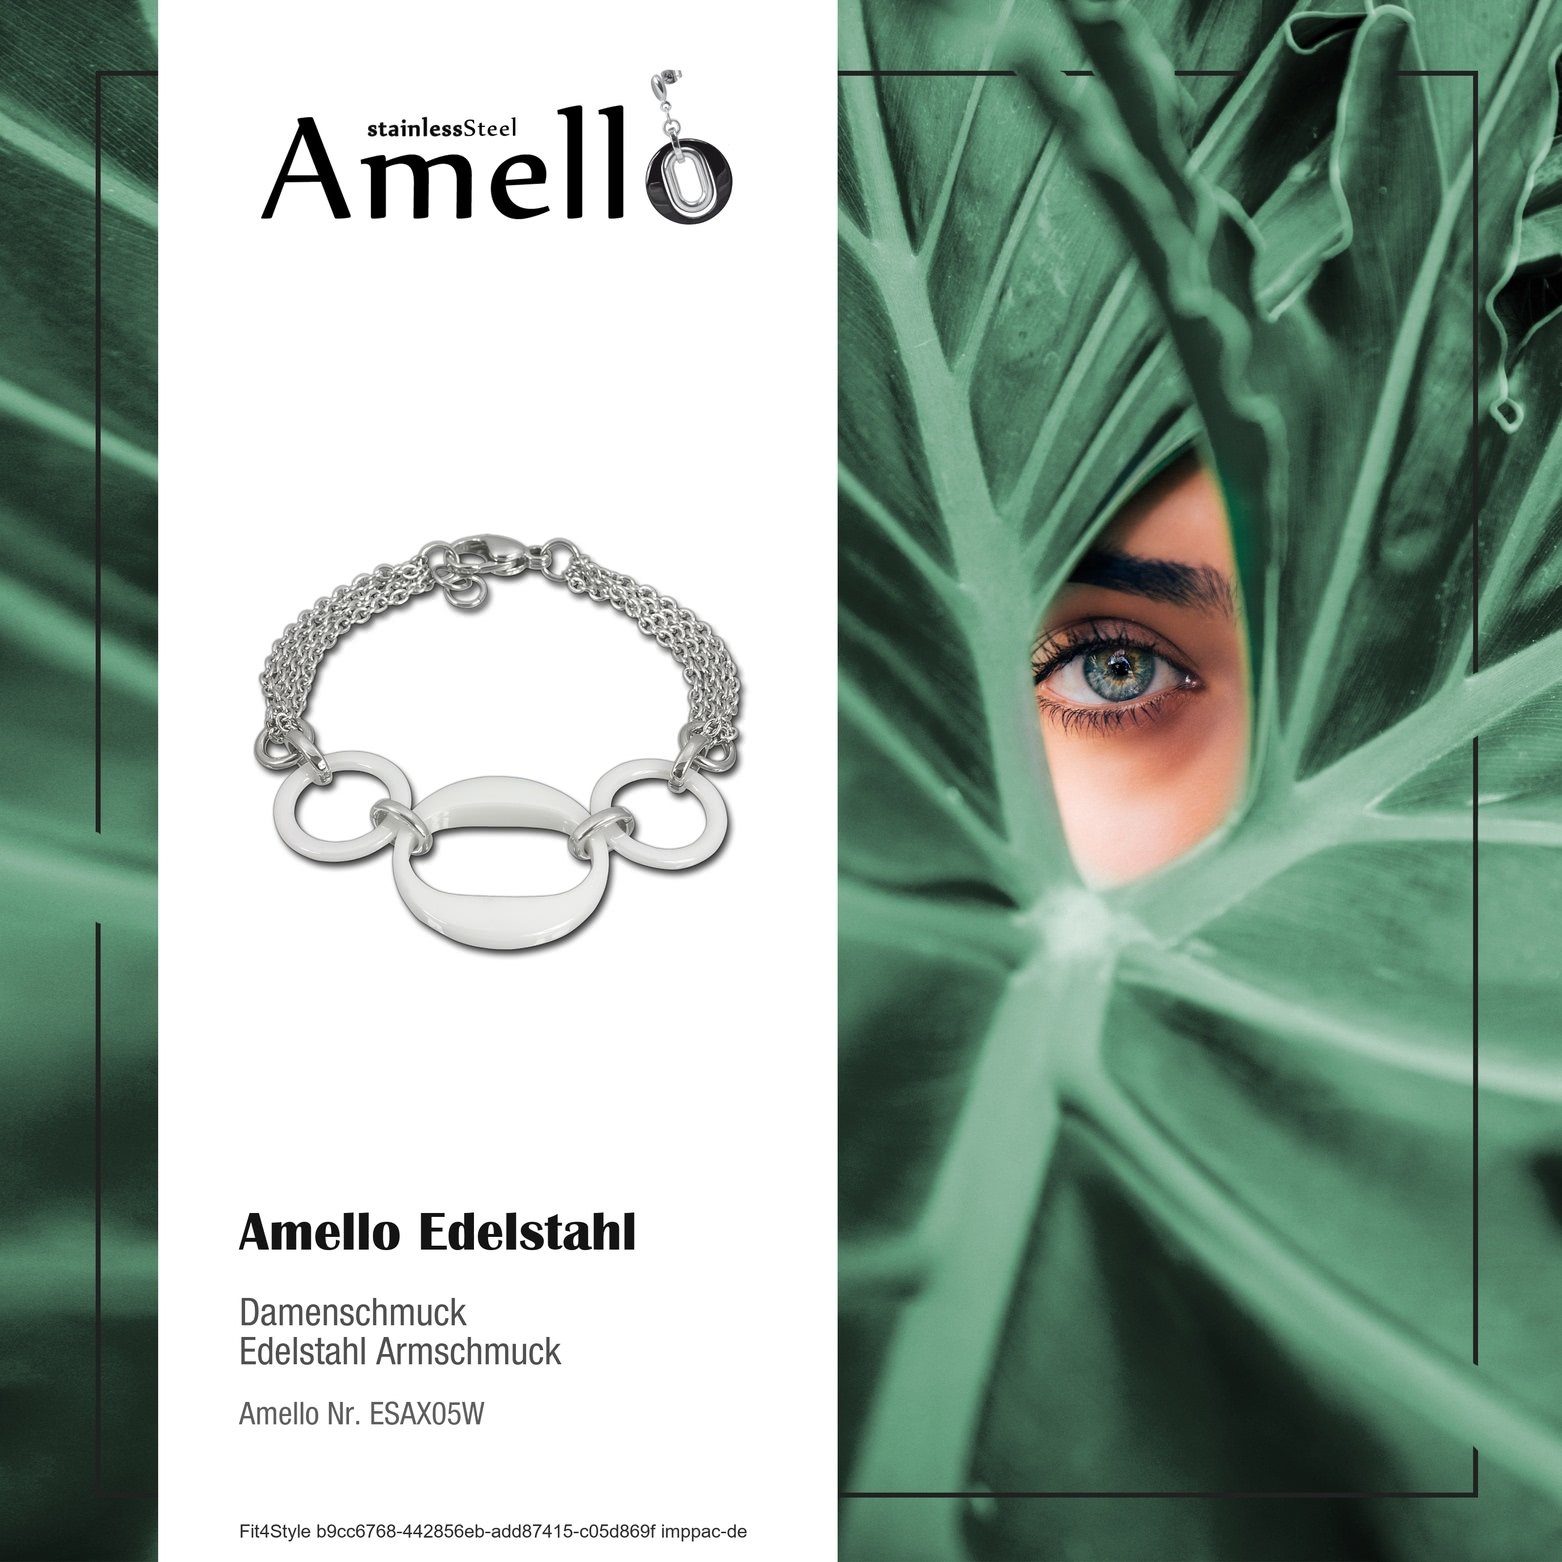 Amello Edelstahlarmband Ringe für weiß silber Armbänder Armband 3 Edelstahl (Armband), Amello Damen (Stainless Steel)